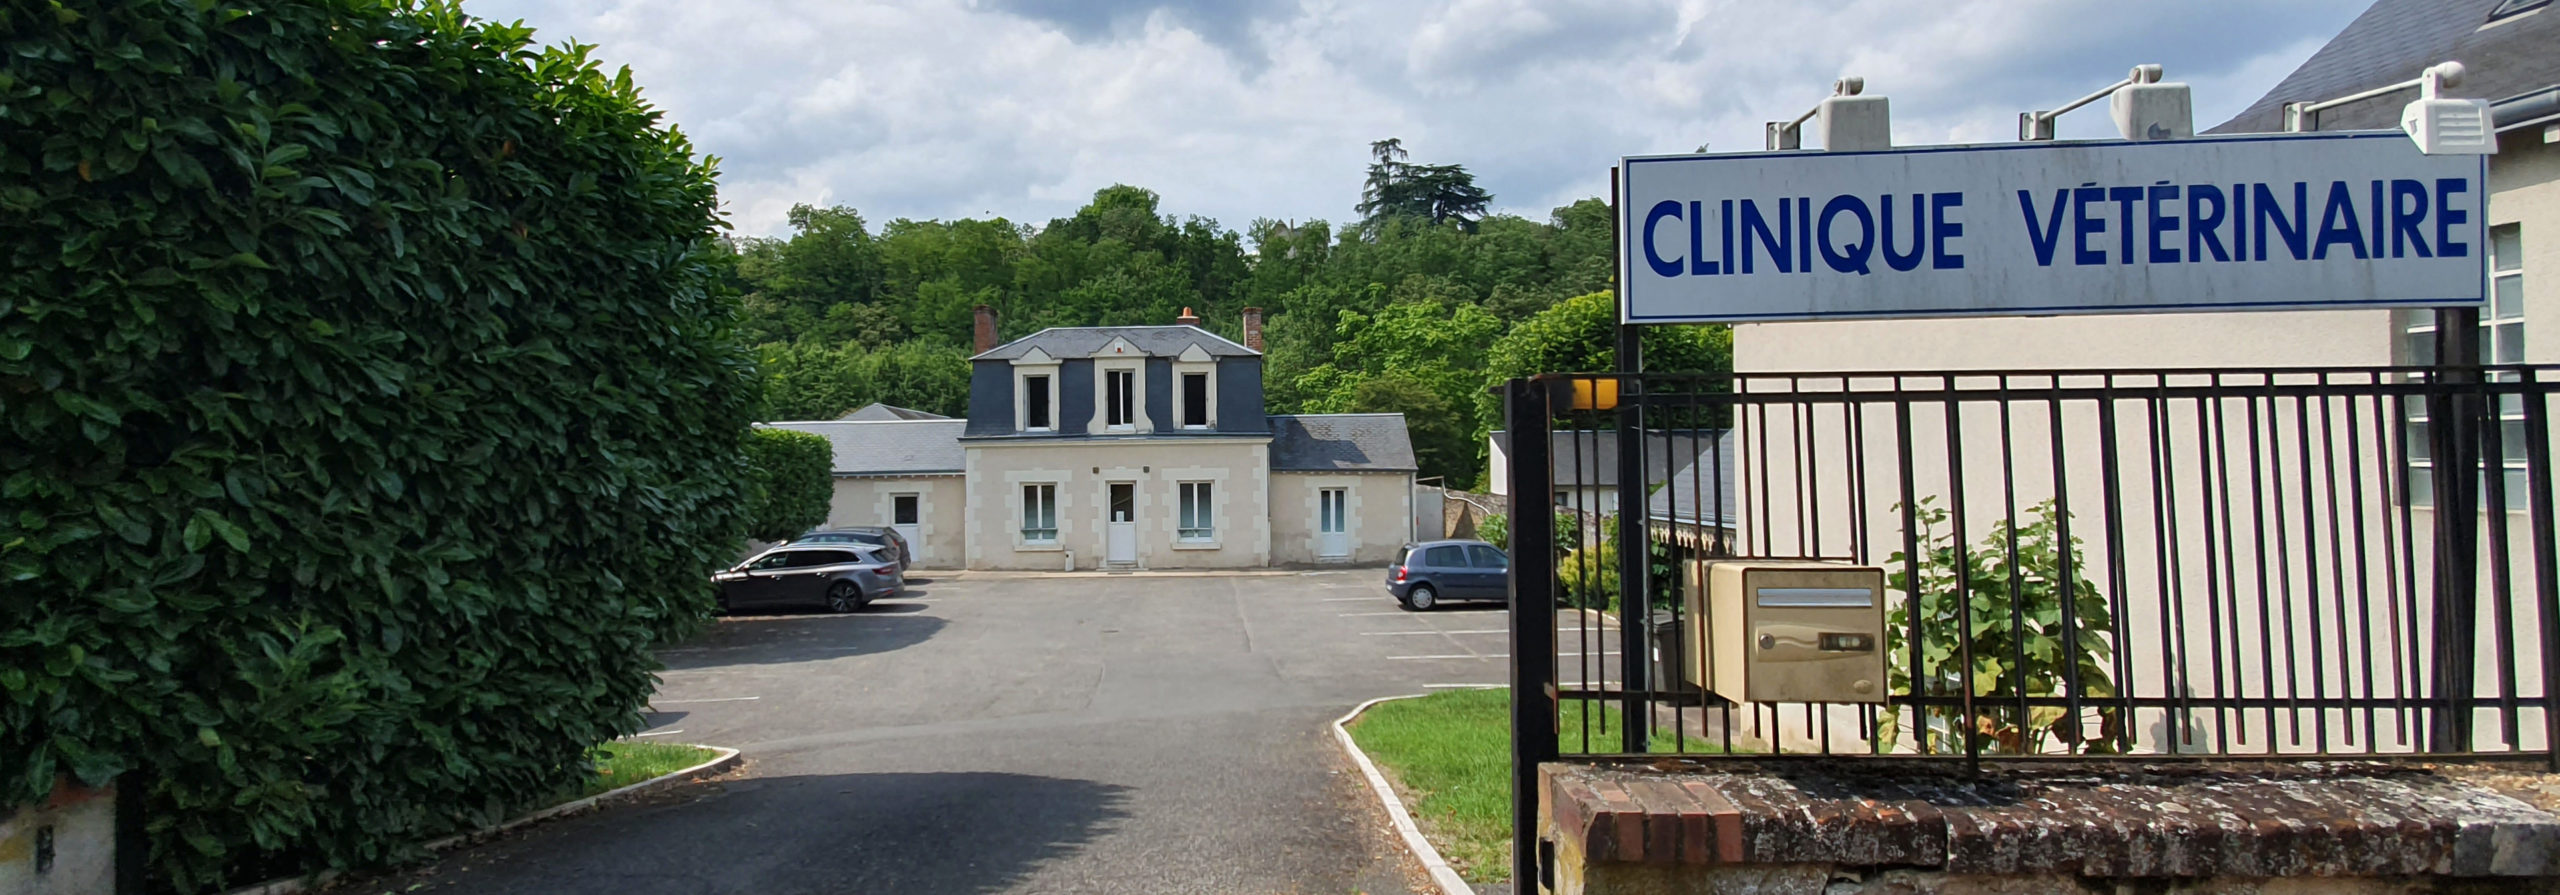 Clinique vétérinaire des Quais, Blois